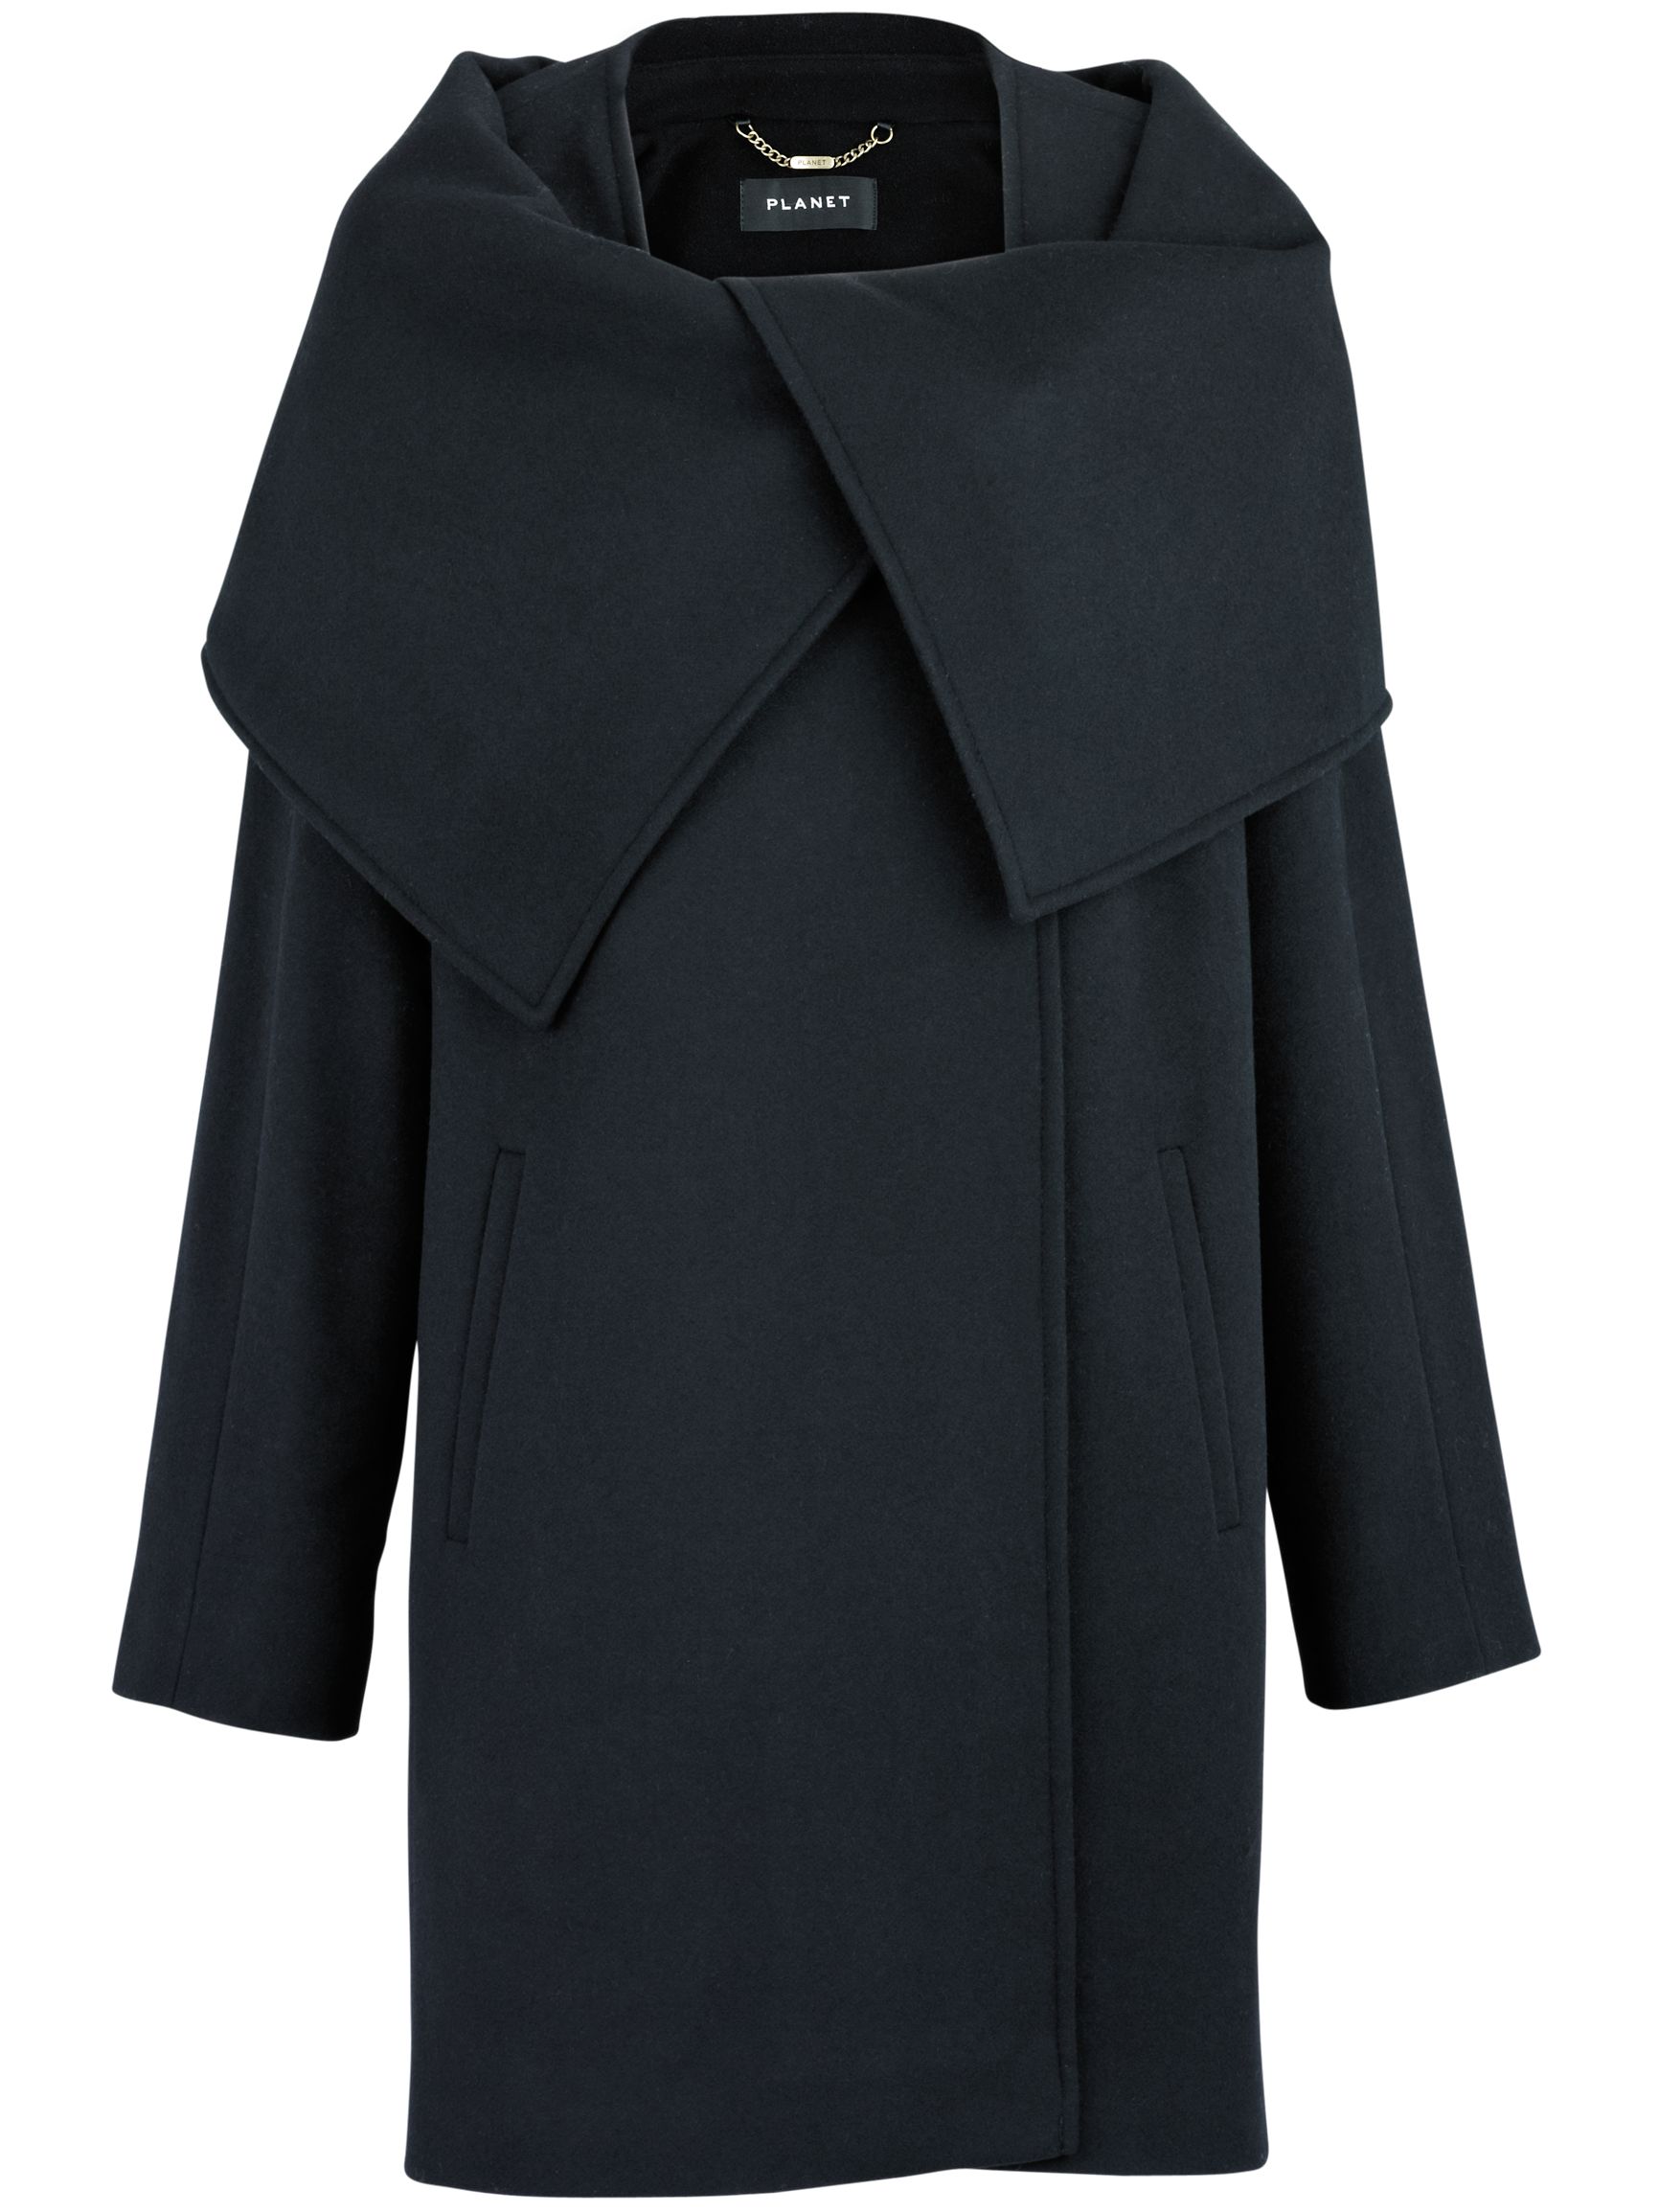 Planet Glamour Collar Coat, Black at JohnLewis